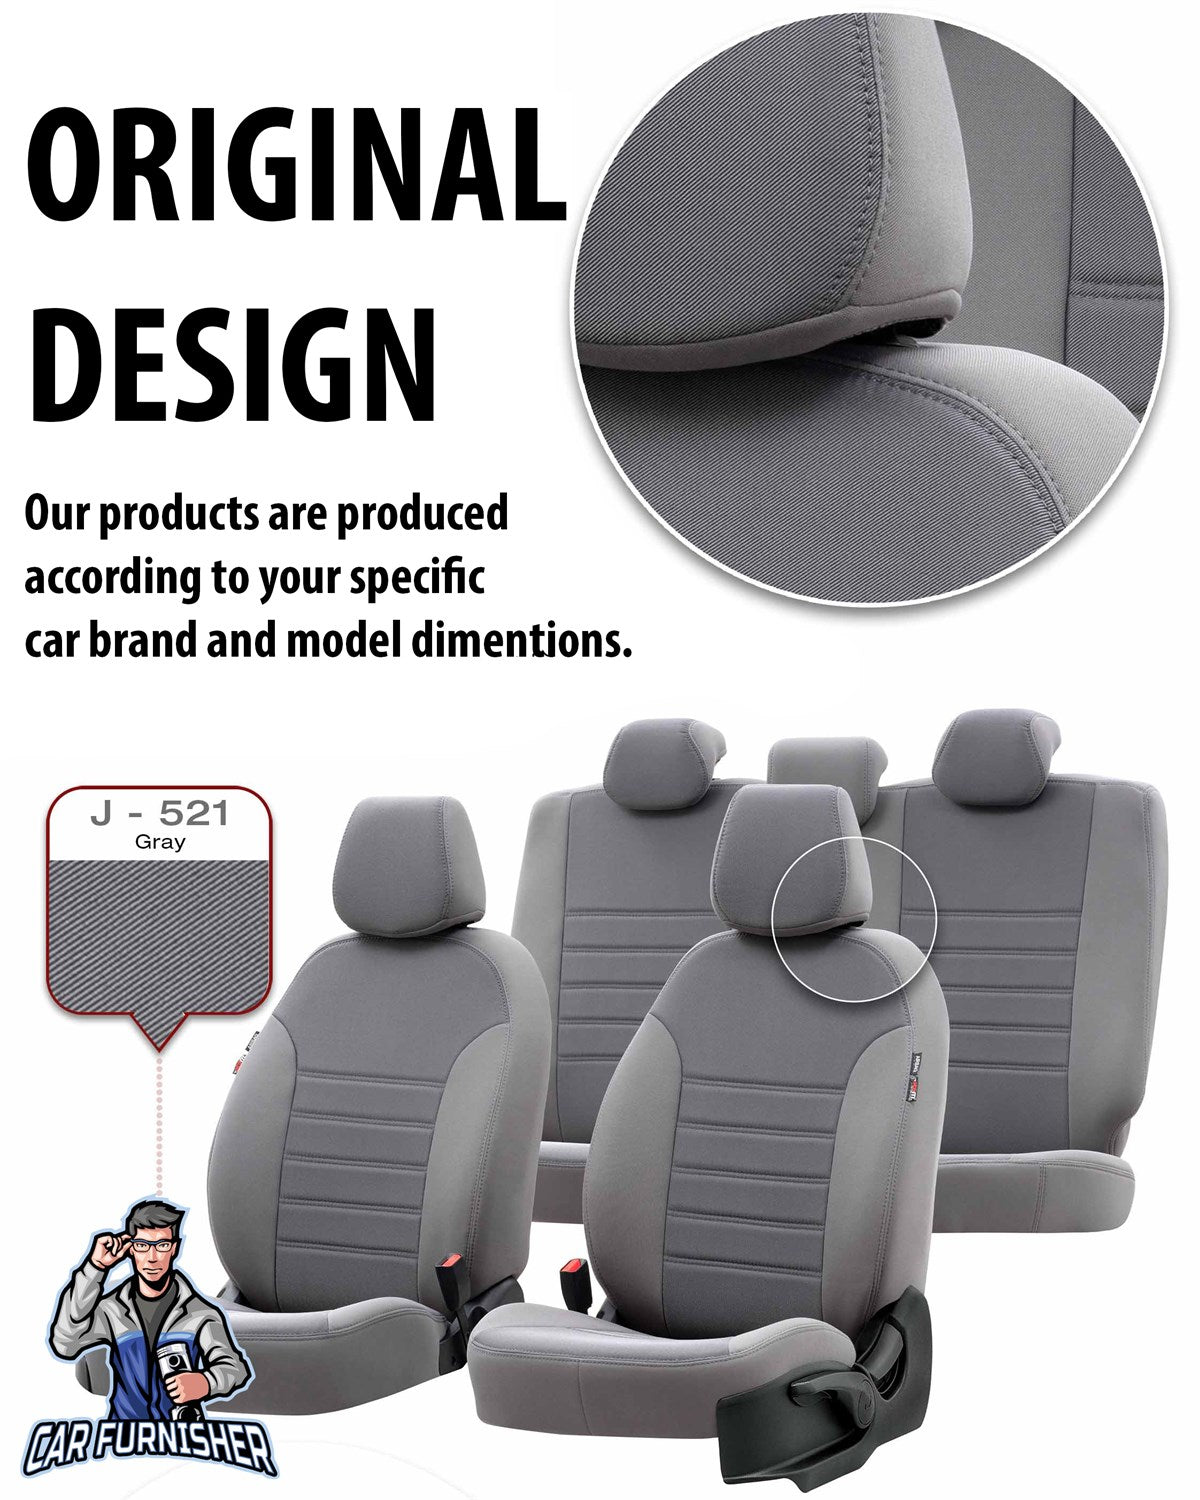 Honda Accord Seat Cover Original Jacquard Design Light Gray Jacquard Fabric